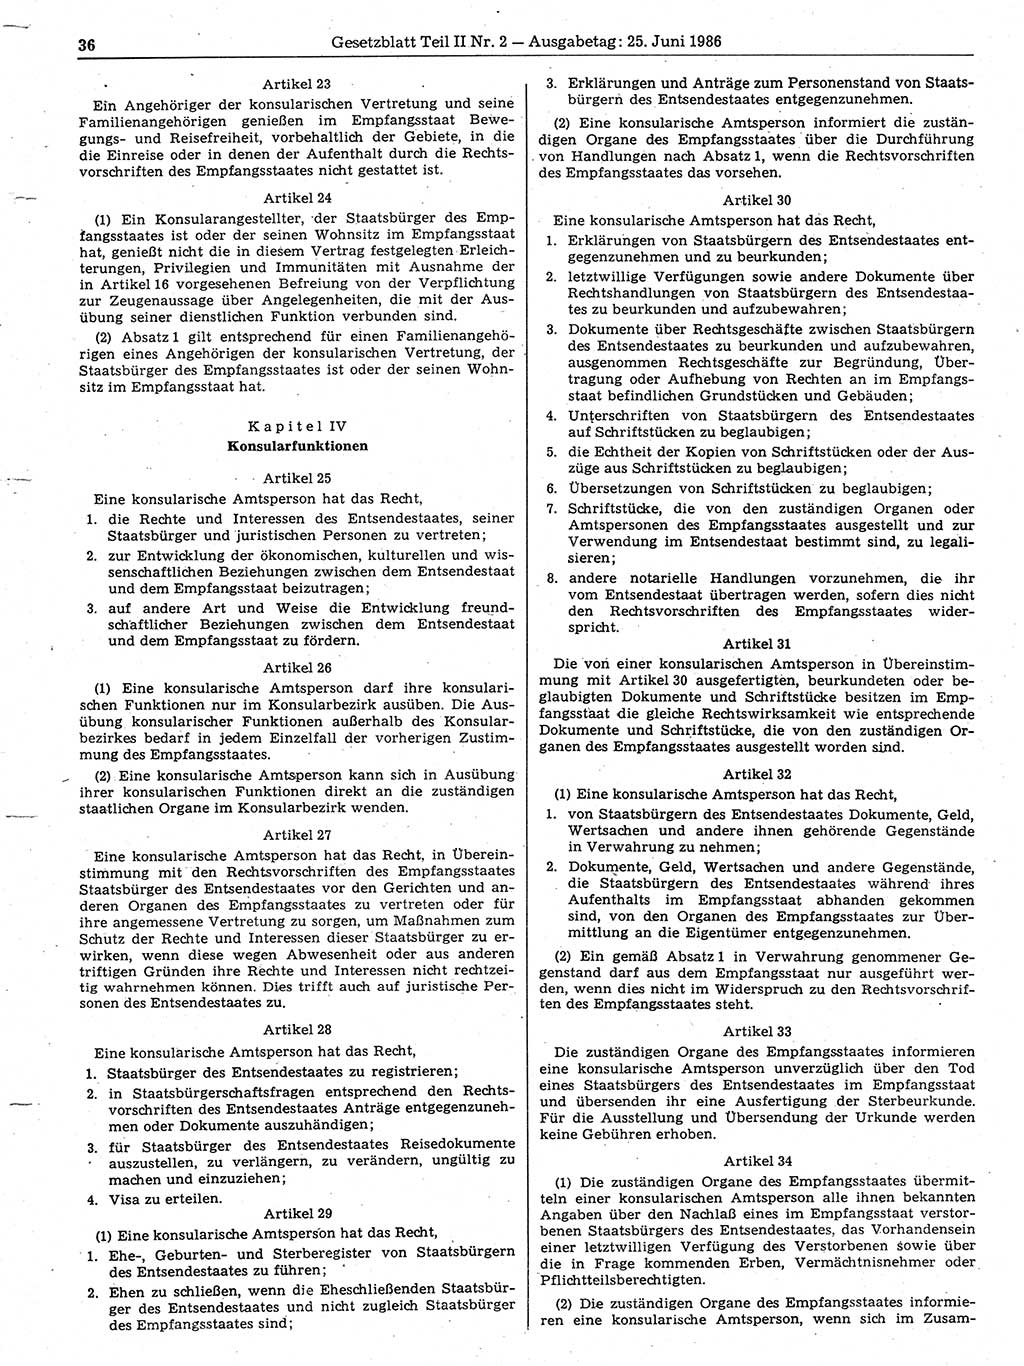 Gesetzblatt (GBl.) der Deutschen Demokratischen Republik (DDR) Teil ⅠⅠ 1986, Seite 36 (GBl. DDR ⅠⅠ 1986, S. 36)